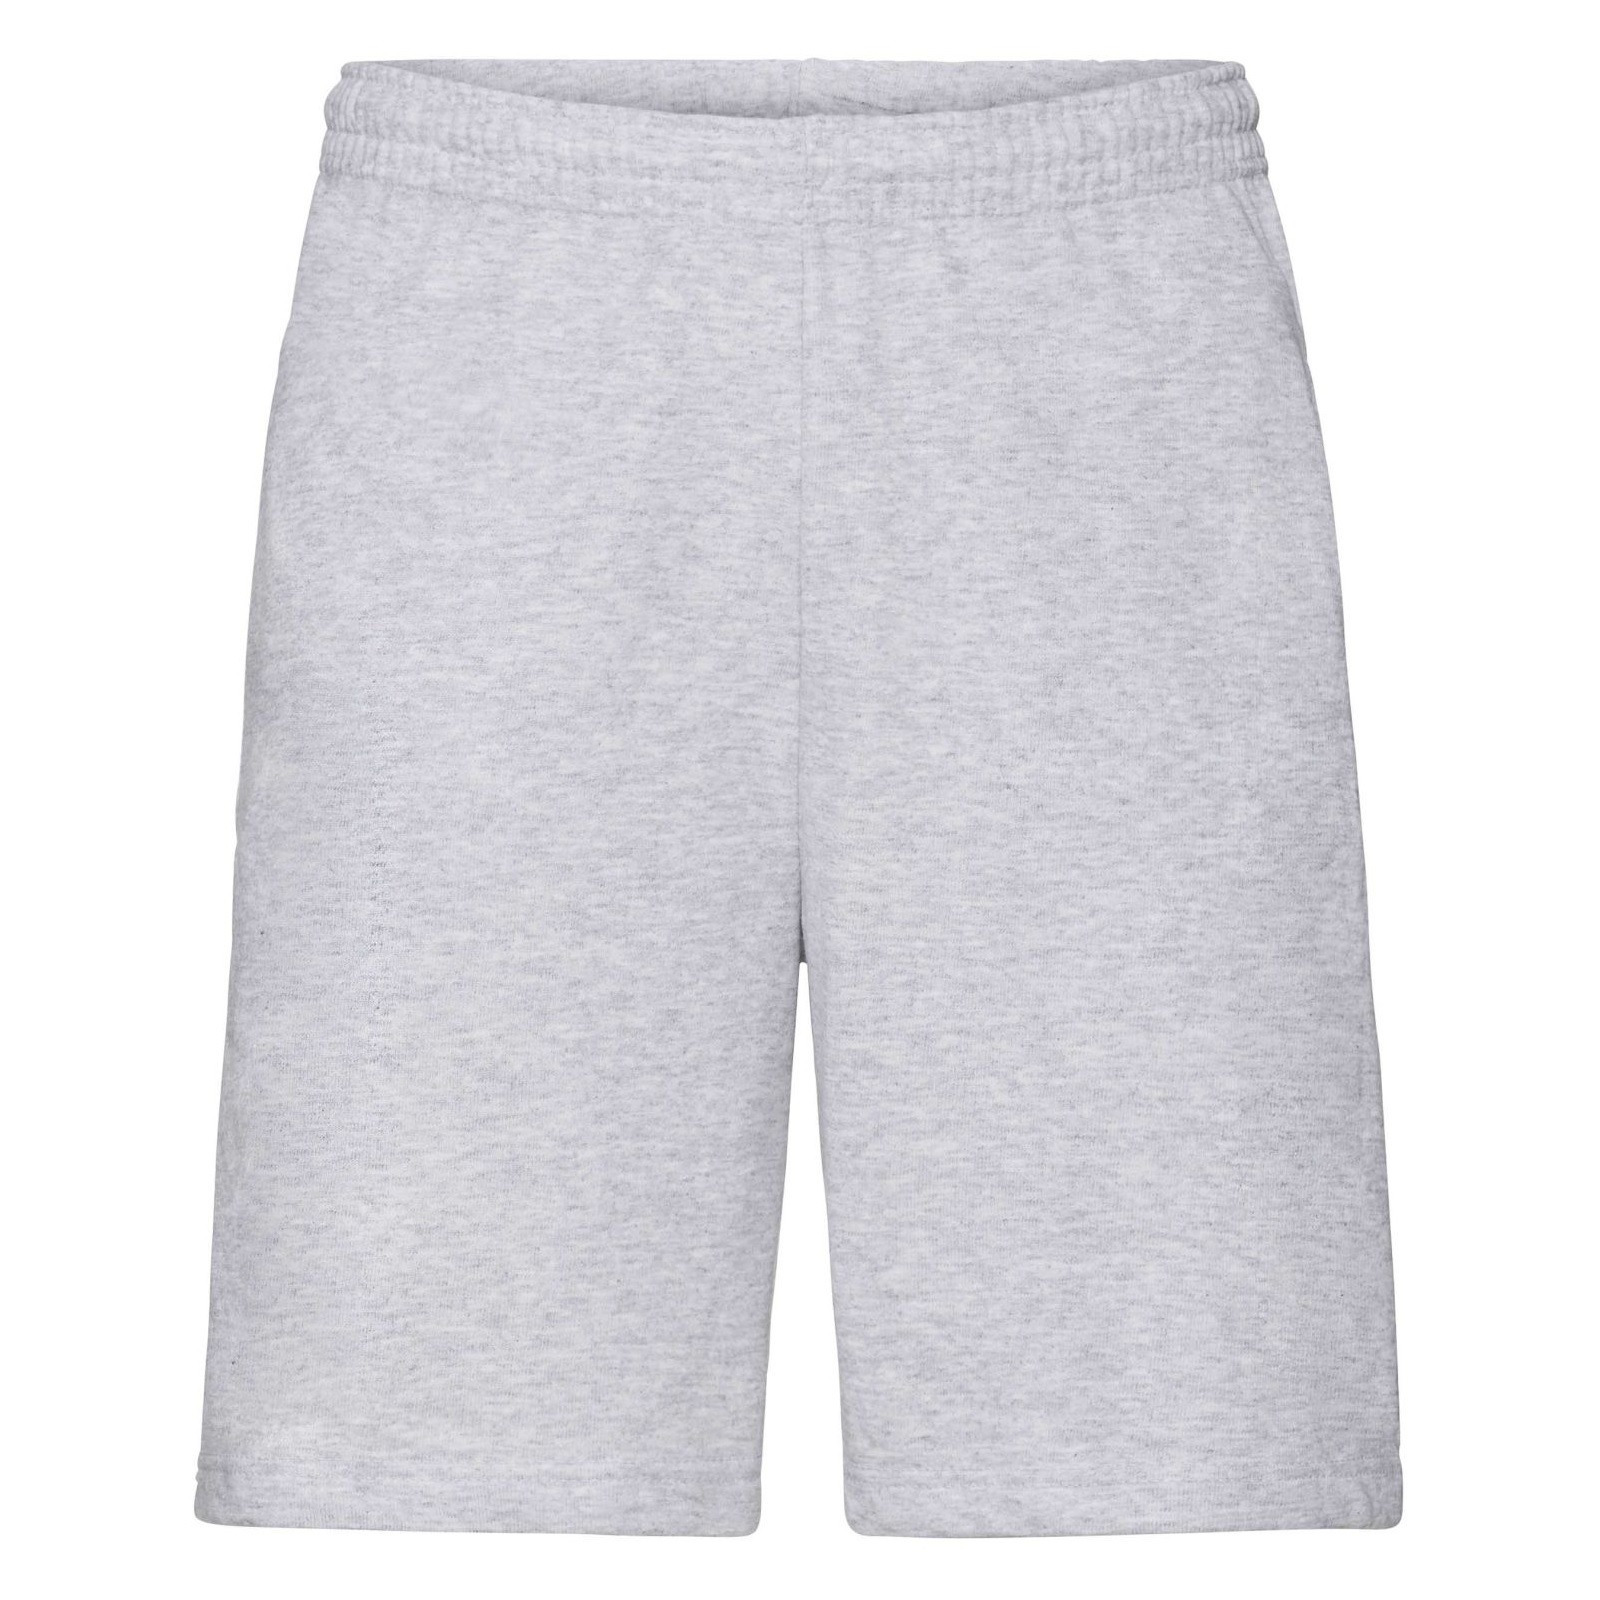 Grijze shorts - korte joggingbroek voor heren